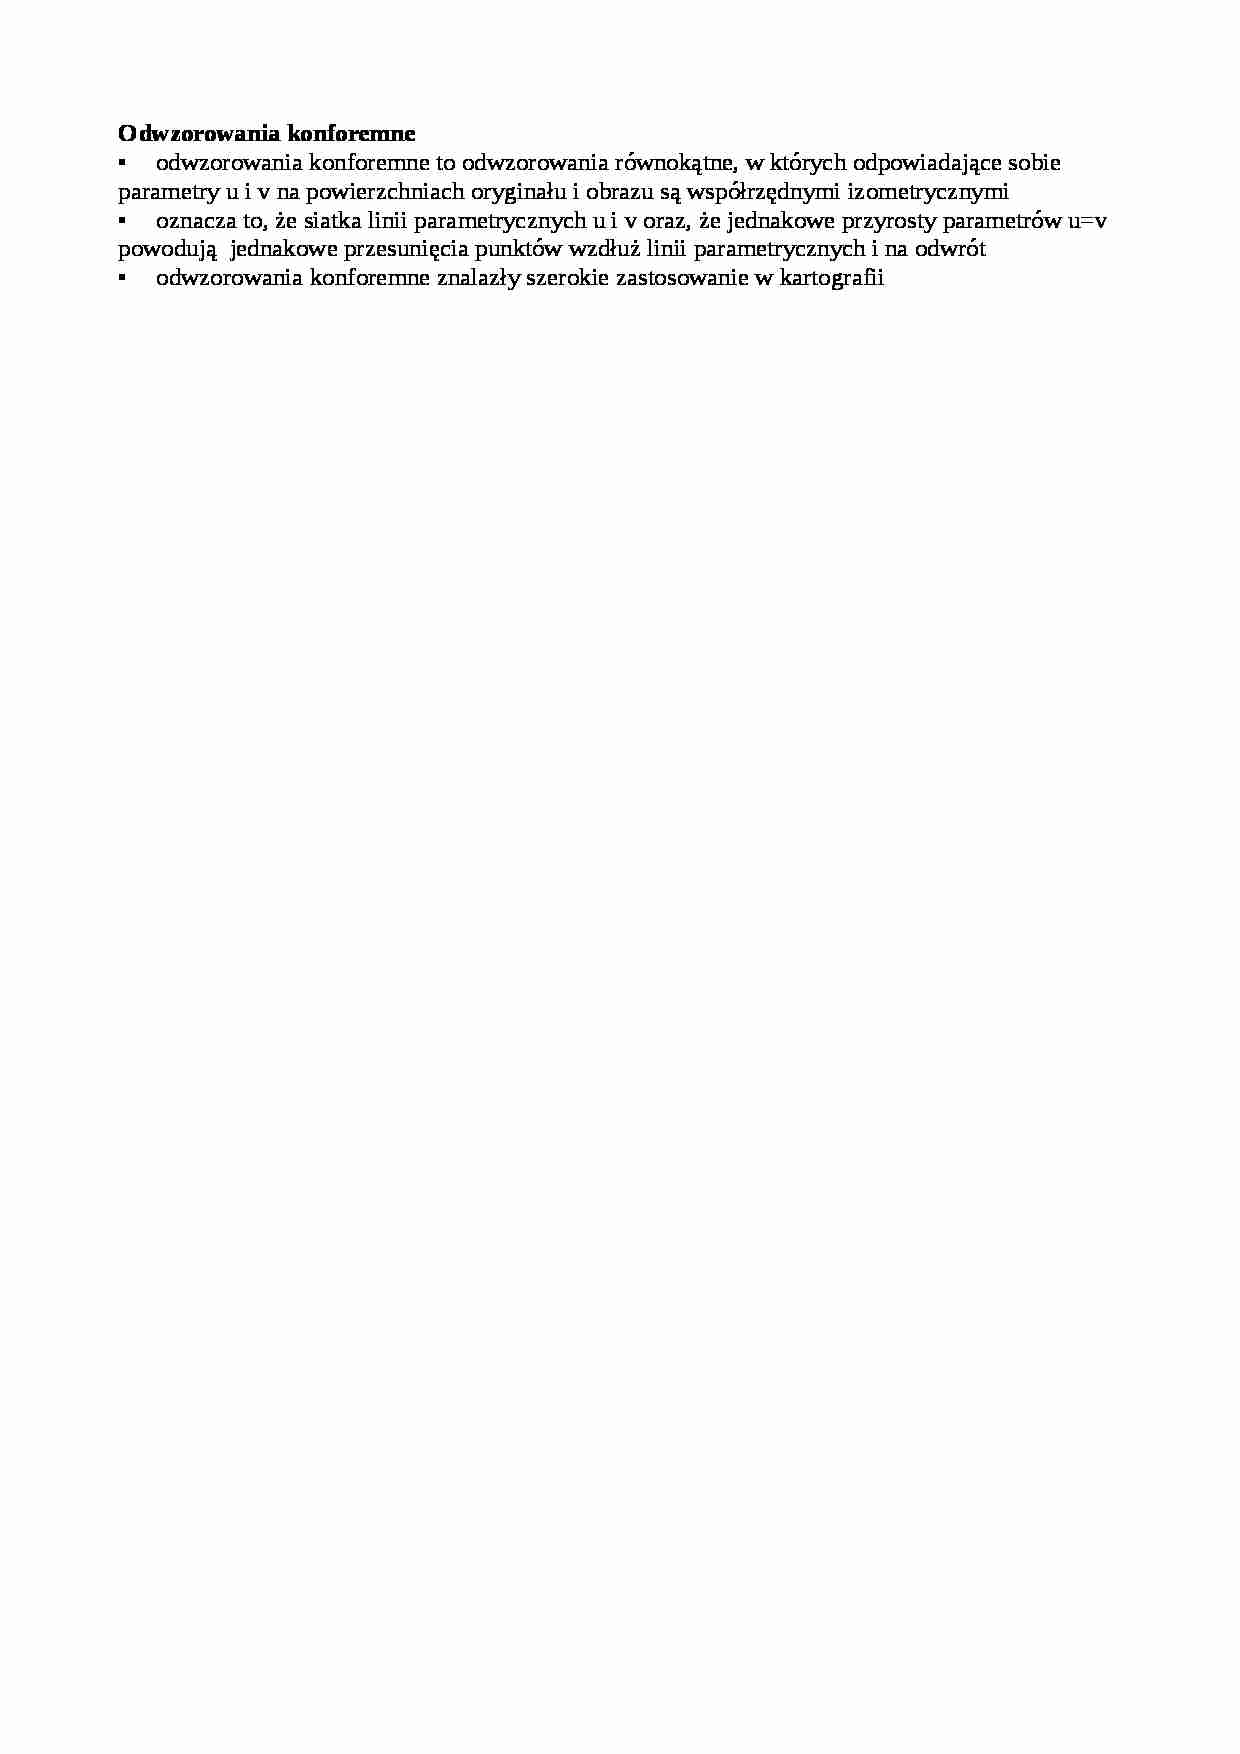 Odwzorowania konforemne-opracowanie - strona 1